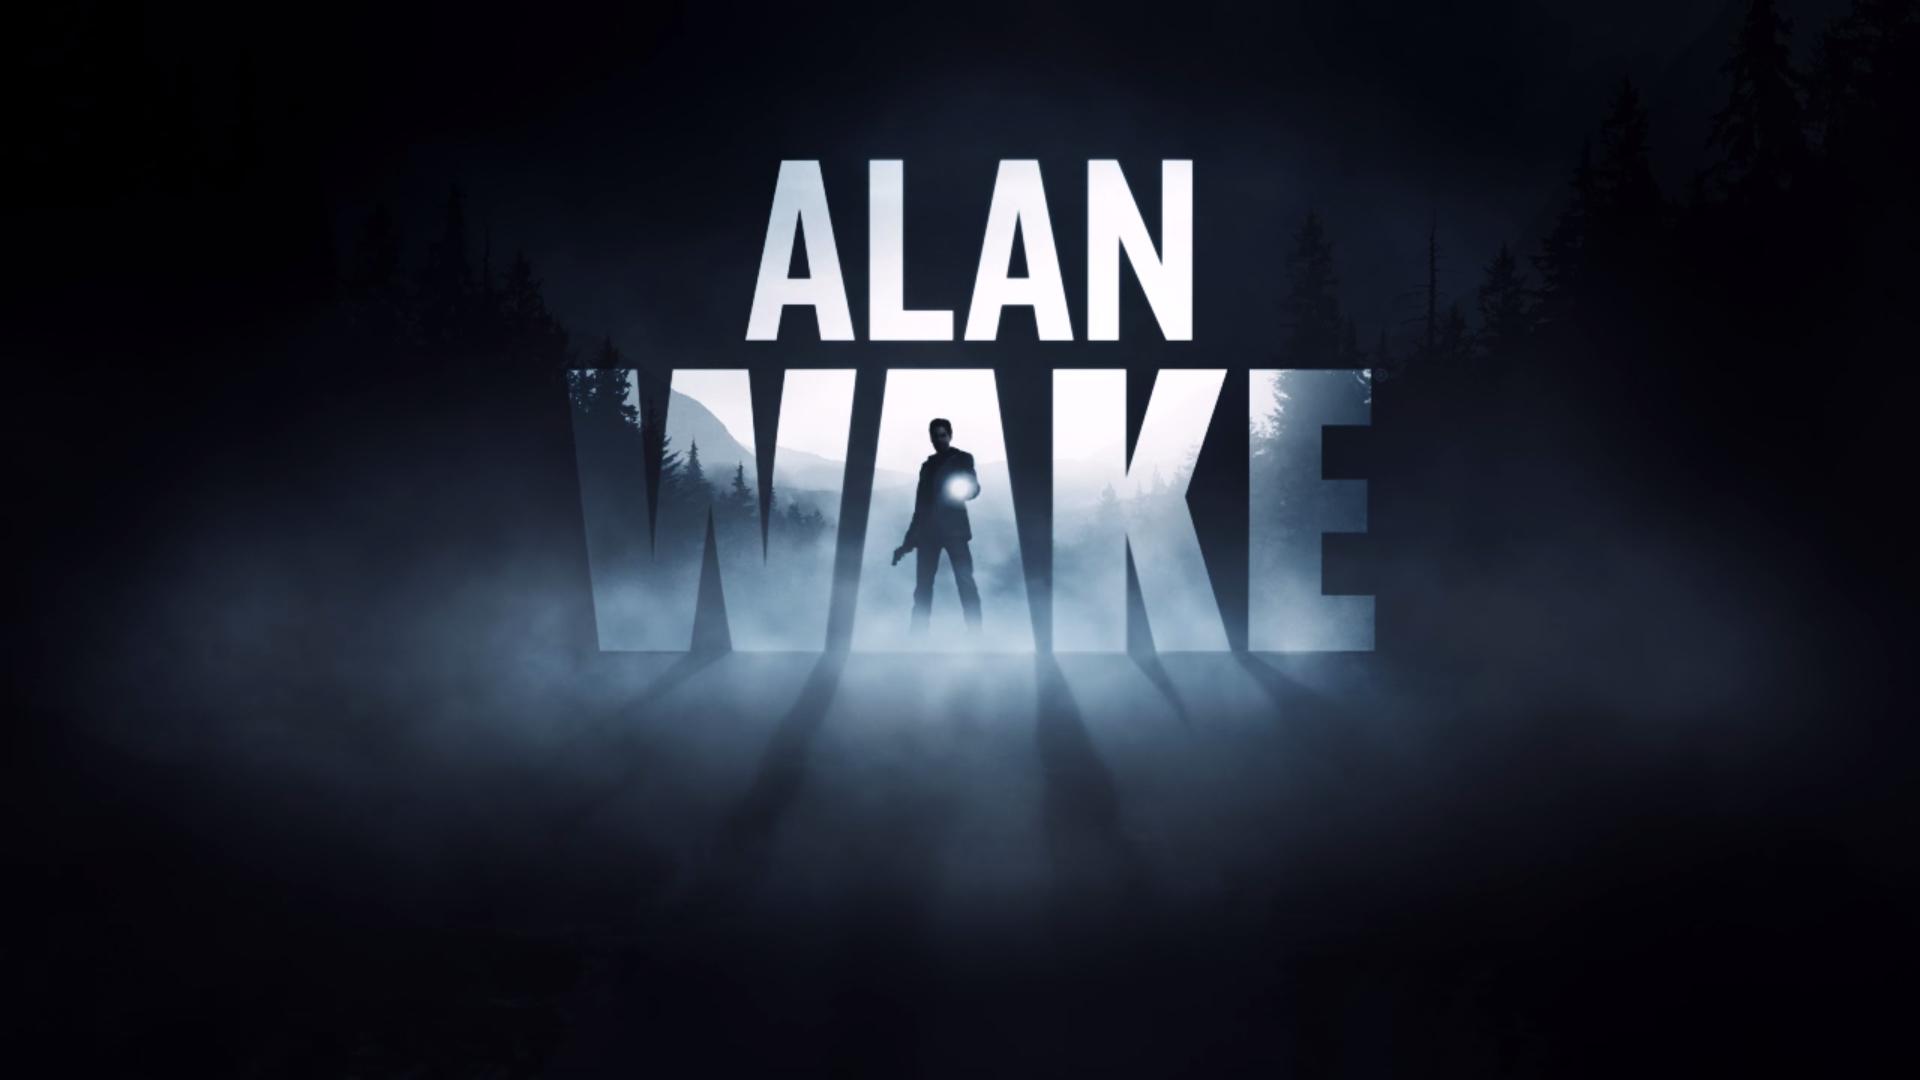 Alan Wake downloading